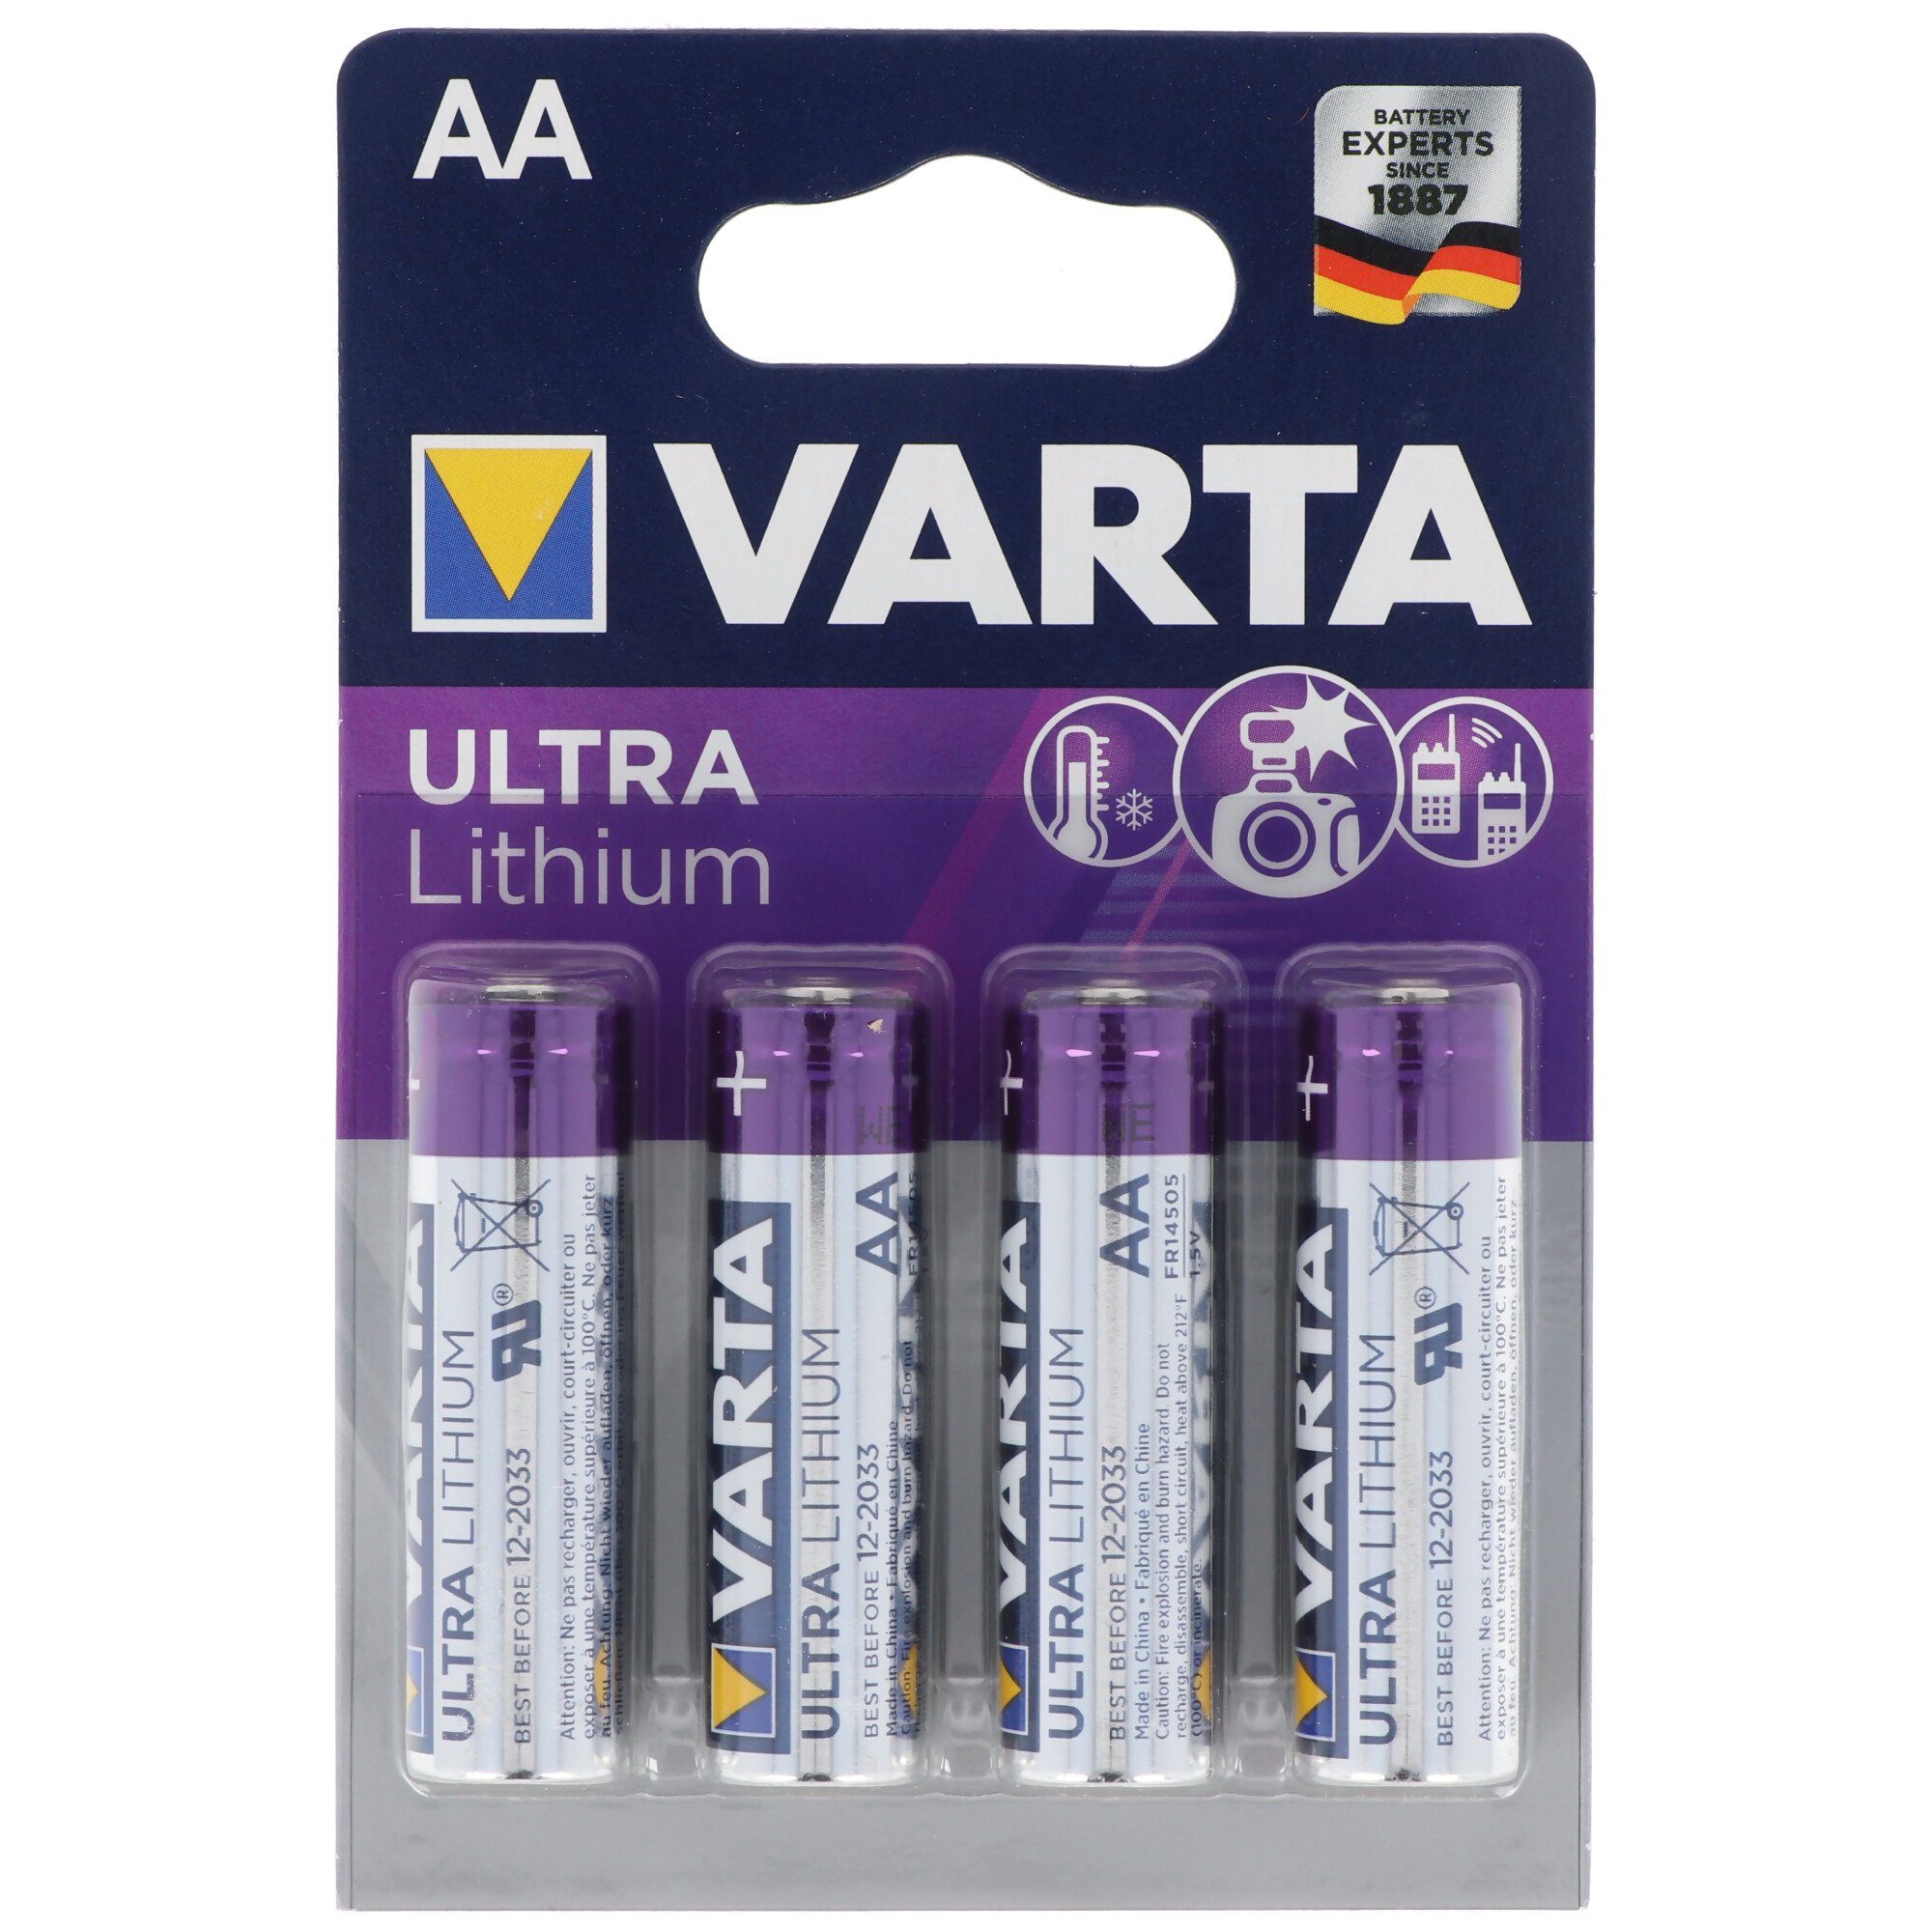 VARTA Varta Ultra Lithium Mignon AA, Varta Lithium Batterien, 6106, 1,5V, 4 Batterie